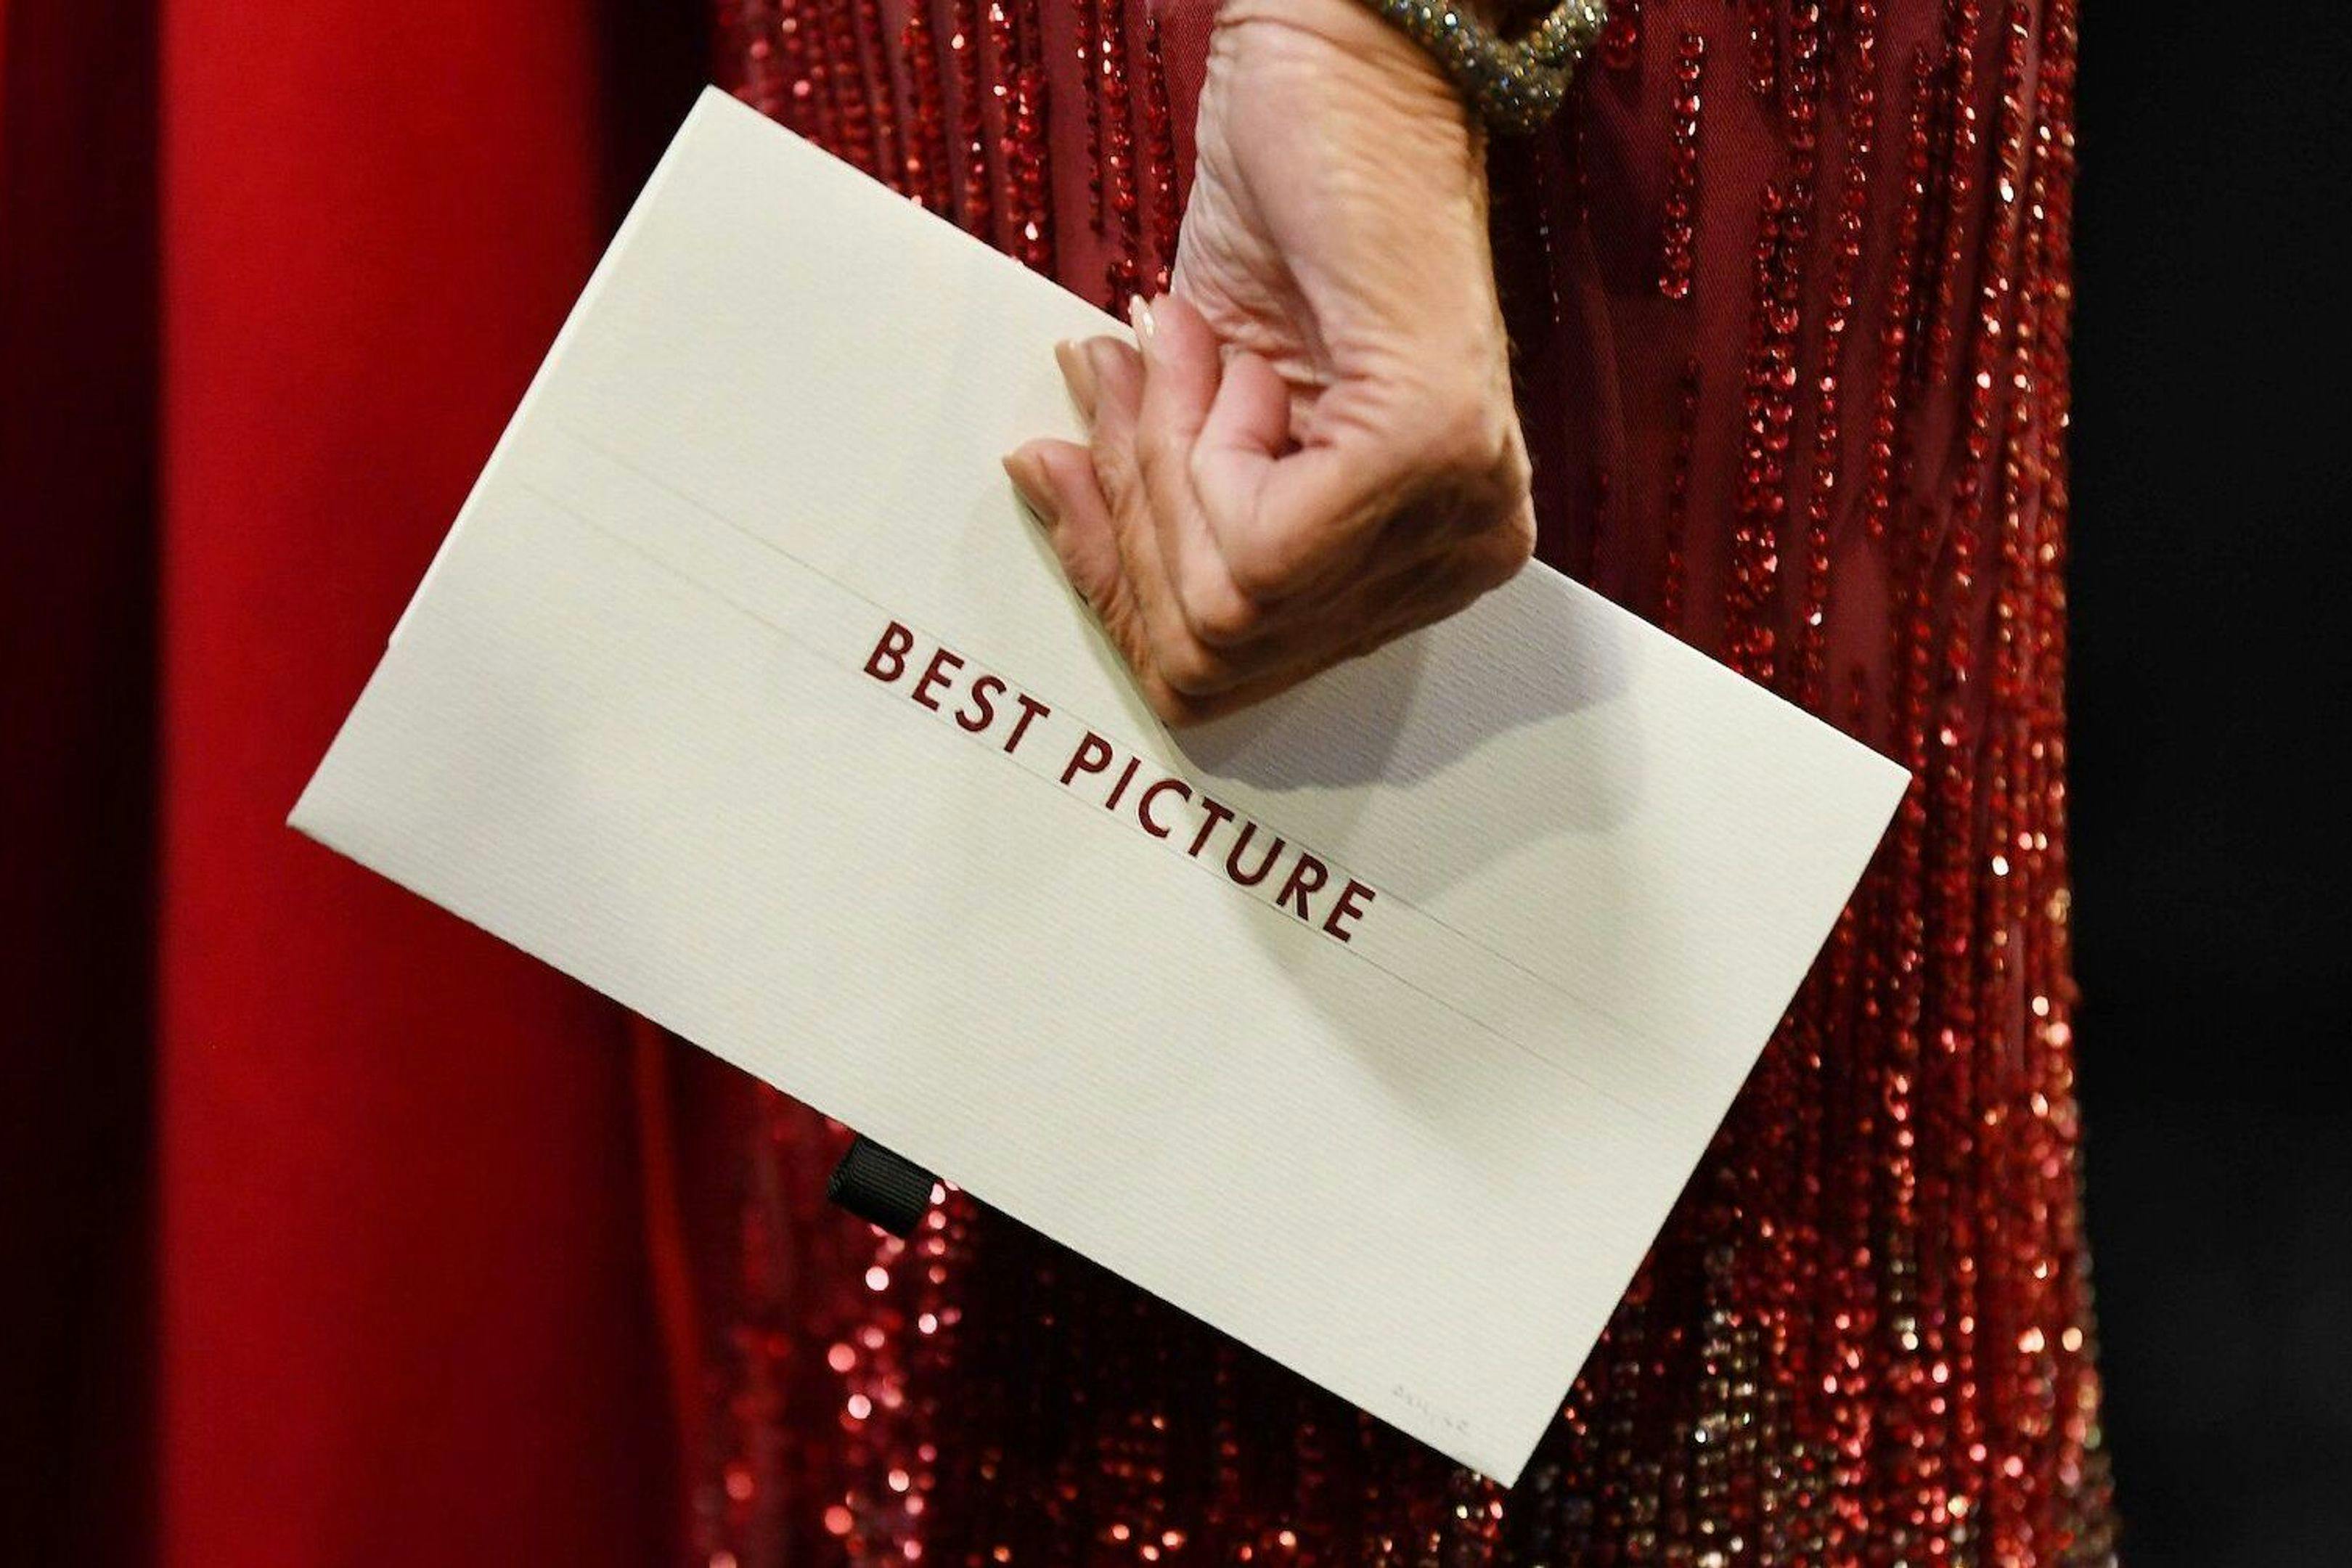 El sistema para escoger el Oscar a la Mejor Película, explicado